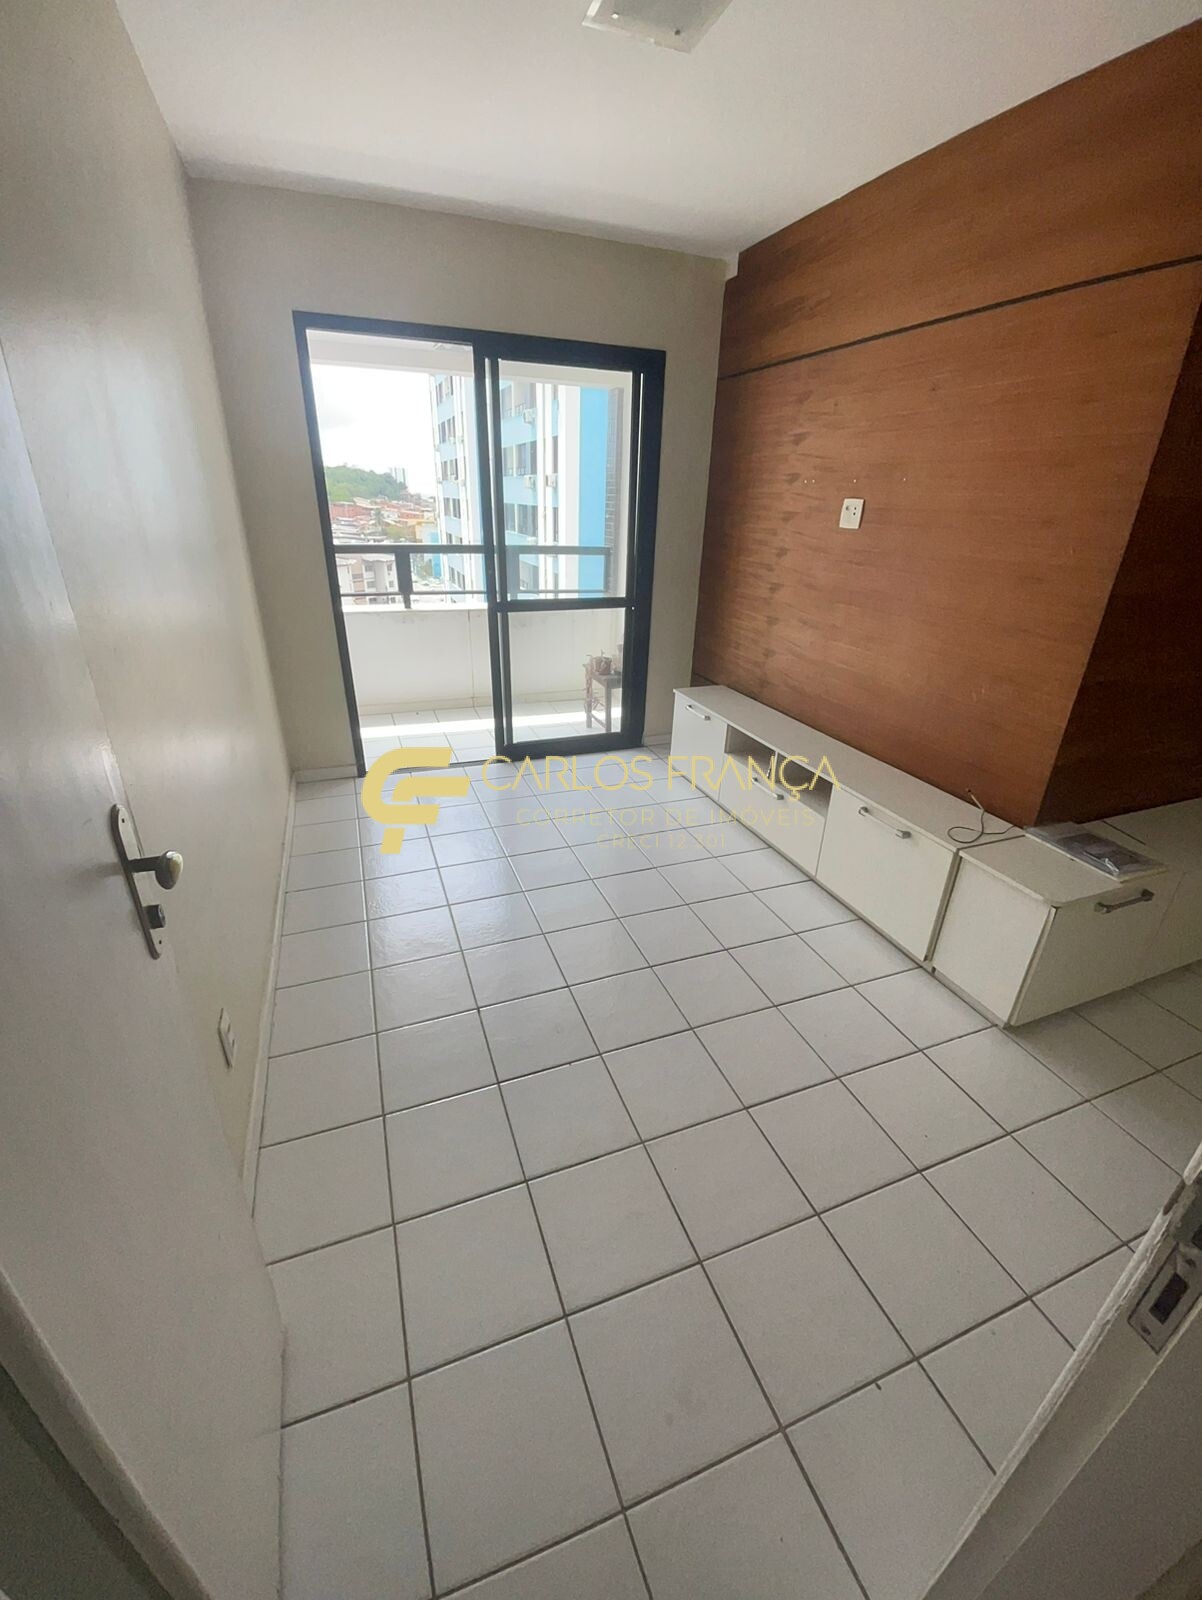 Apartamento, 3 quartos, 69 m² - Foto 1